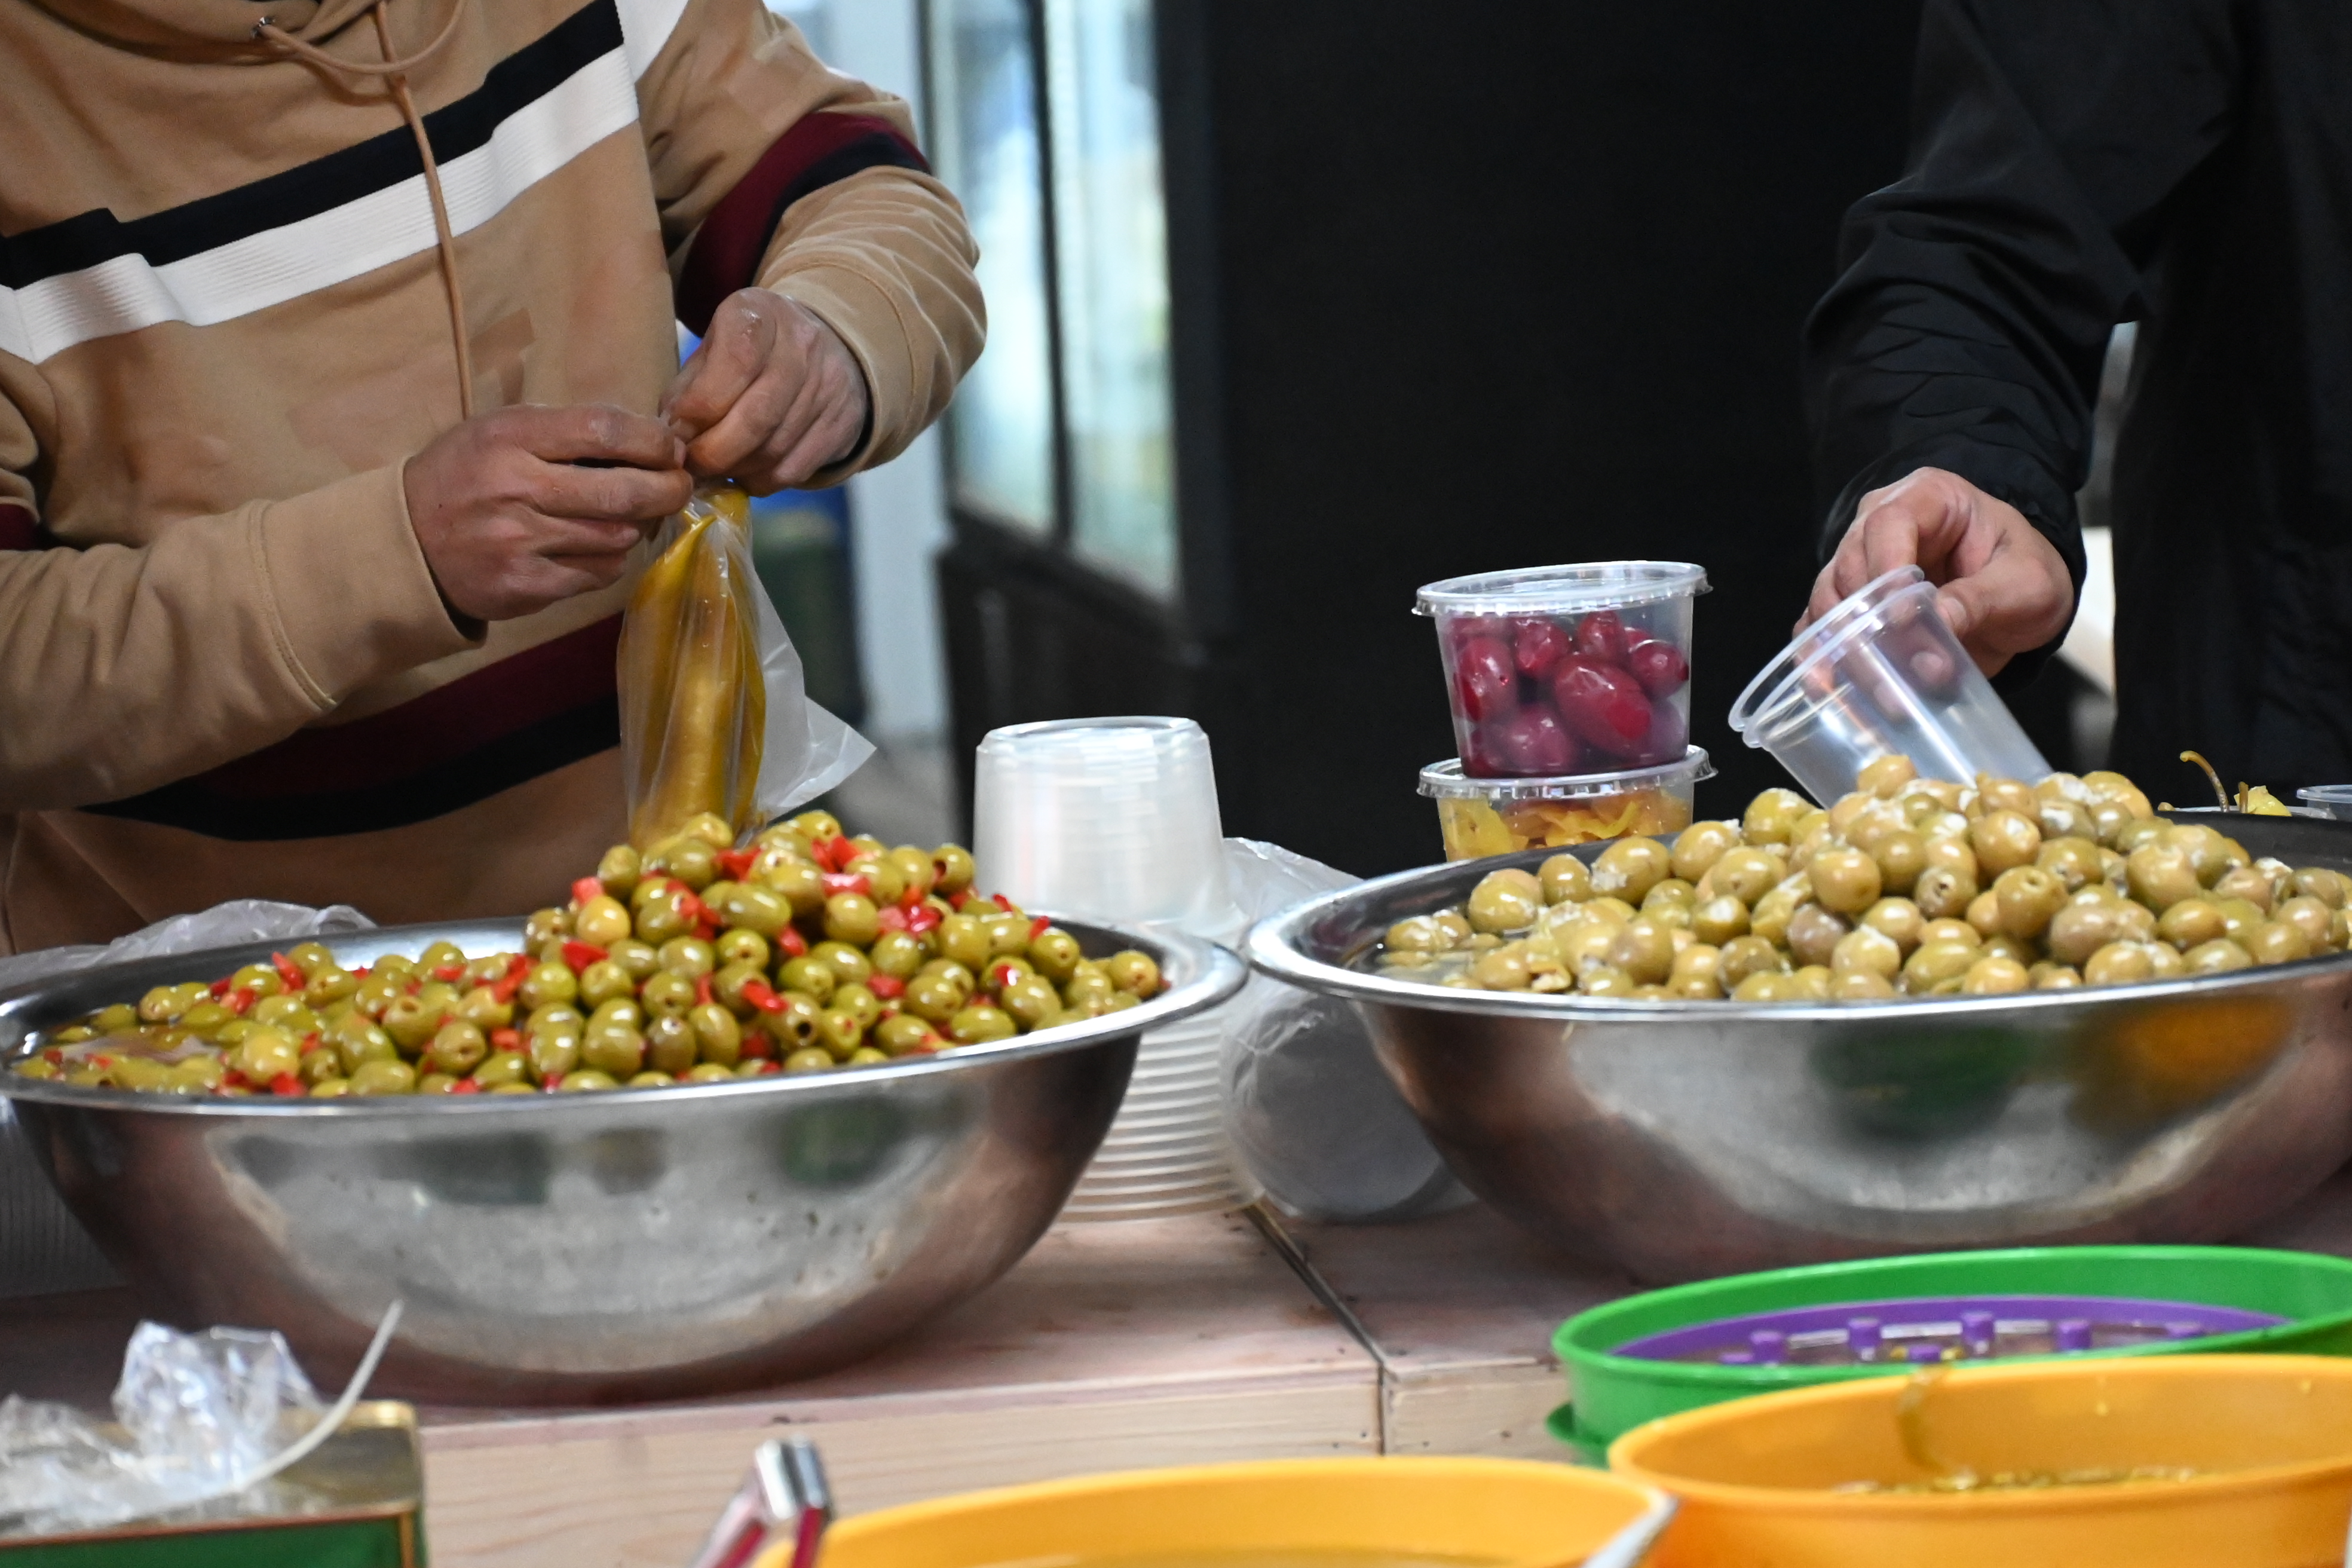 صور حصرية لقسماوي نت | كفرقاسم : أجواء رمضانية في سوق رمضان التقليدي في ميدان ابي بكر الصديق وتوافد وازدحام في اليوم الأول